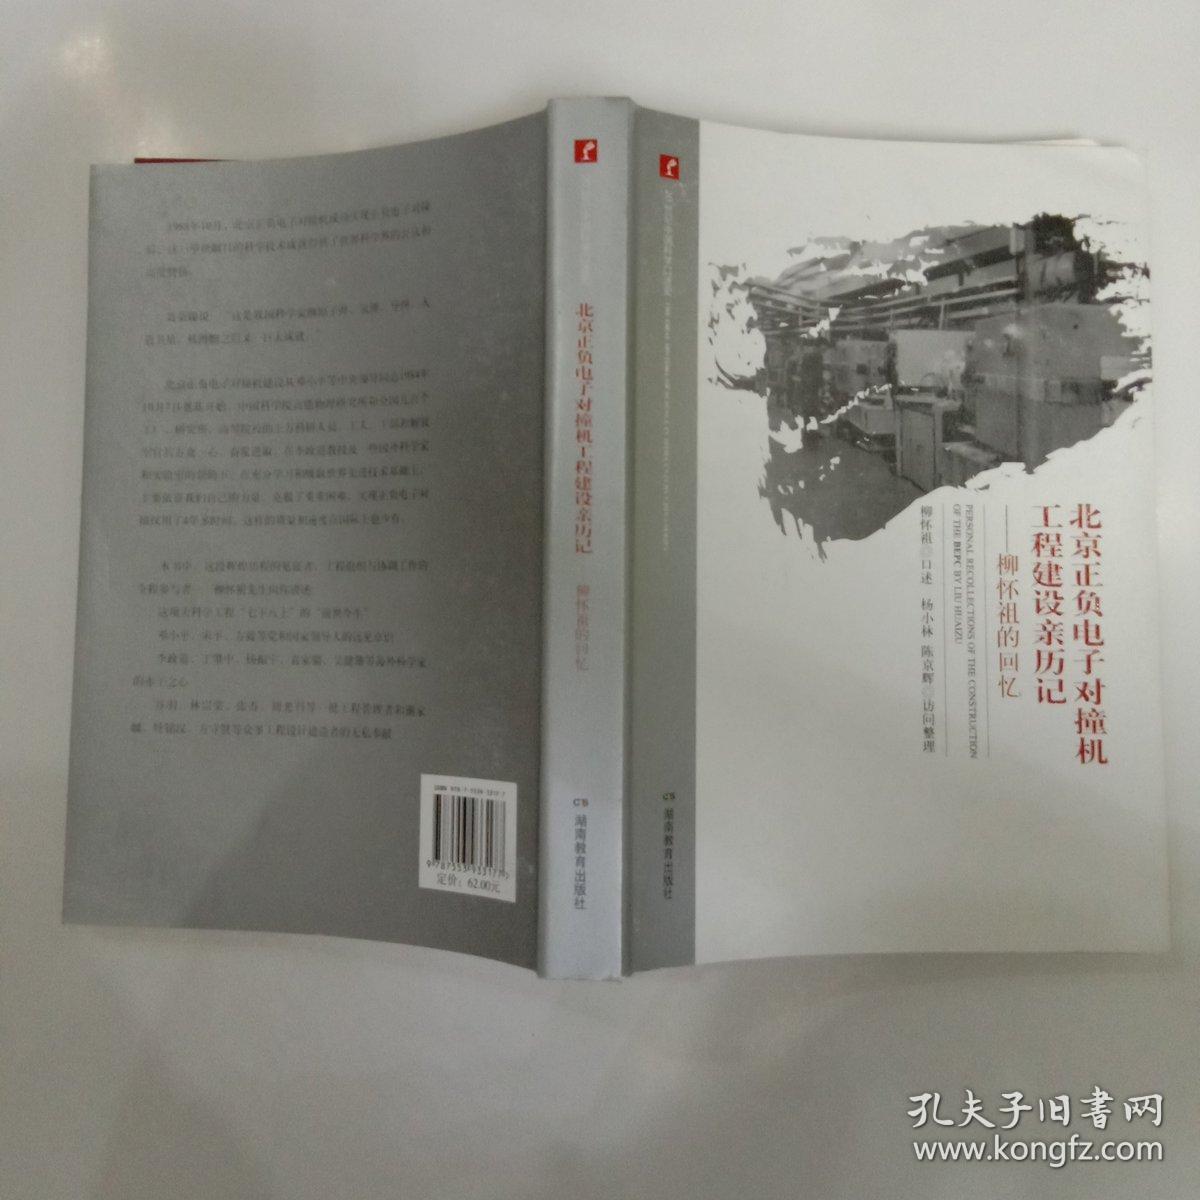 北京正负电子对撞机工程建设亲历记-柳怀祖的回忆